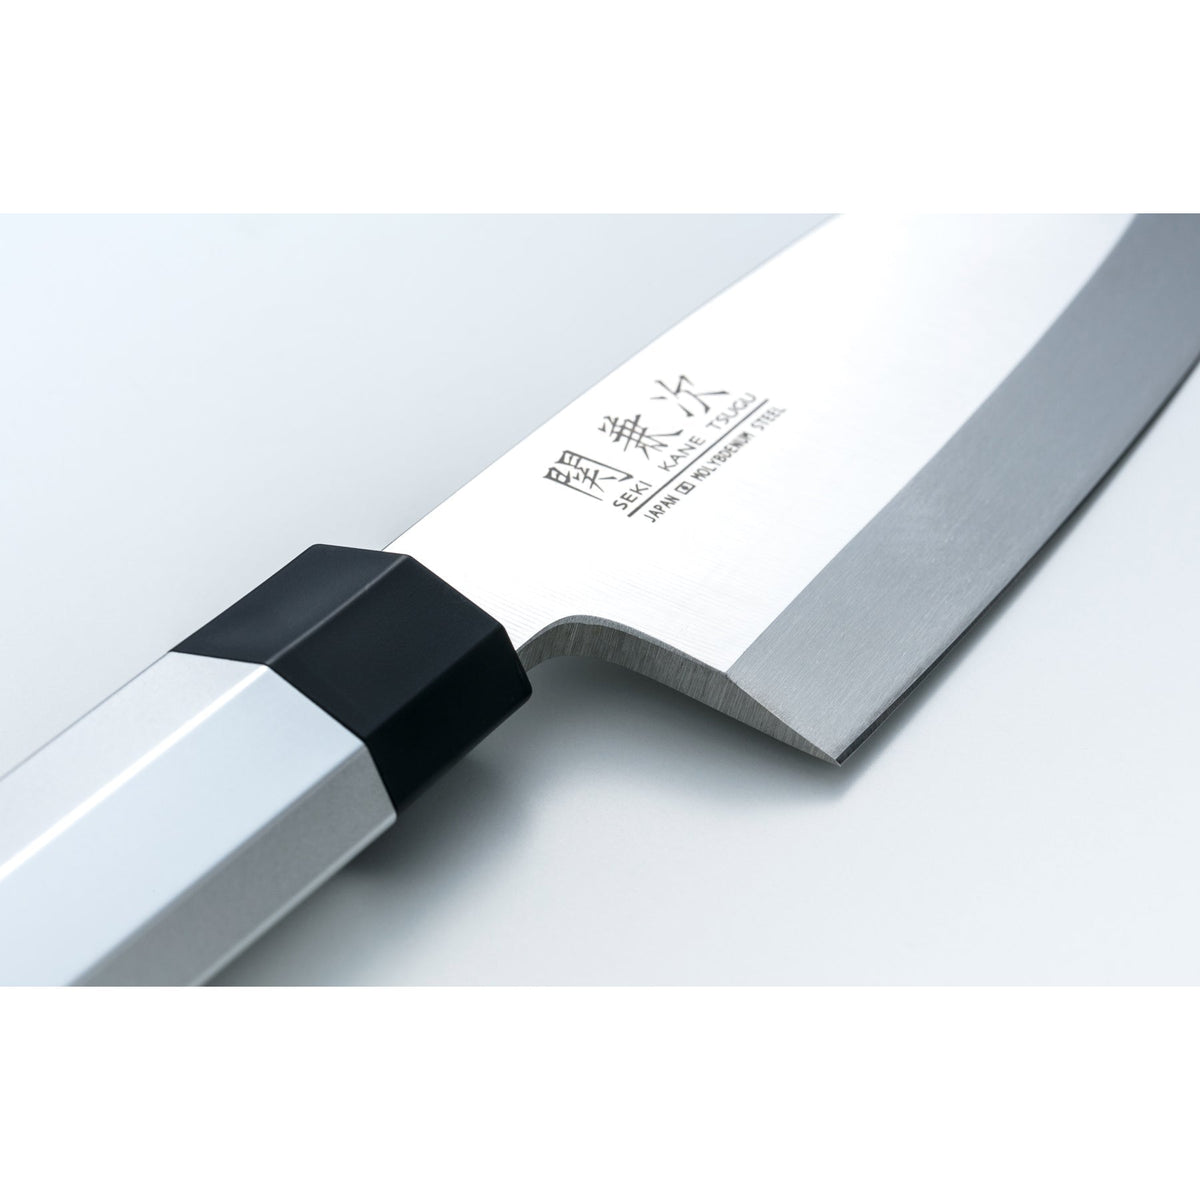 Sekikanetsugu Single Edged Japanese Deba Knife with Aluminum Handle 16 –  Japanese Taste